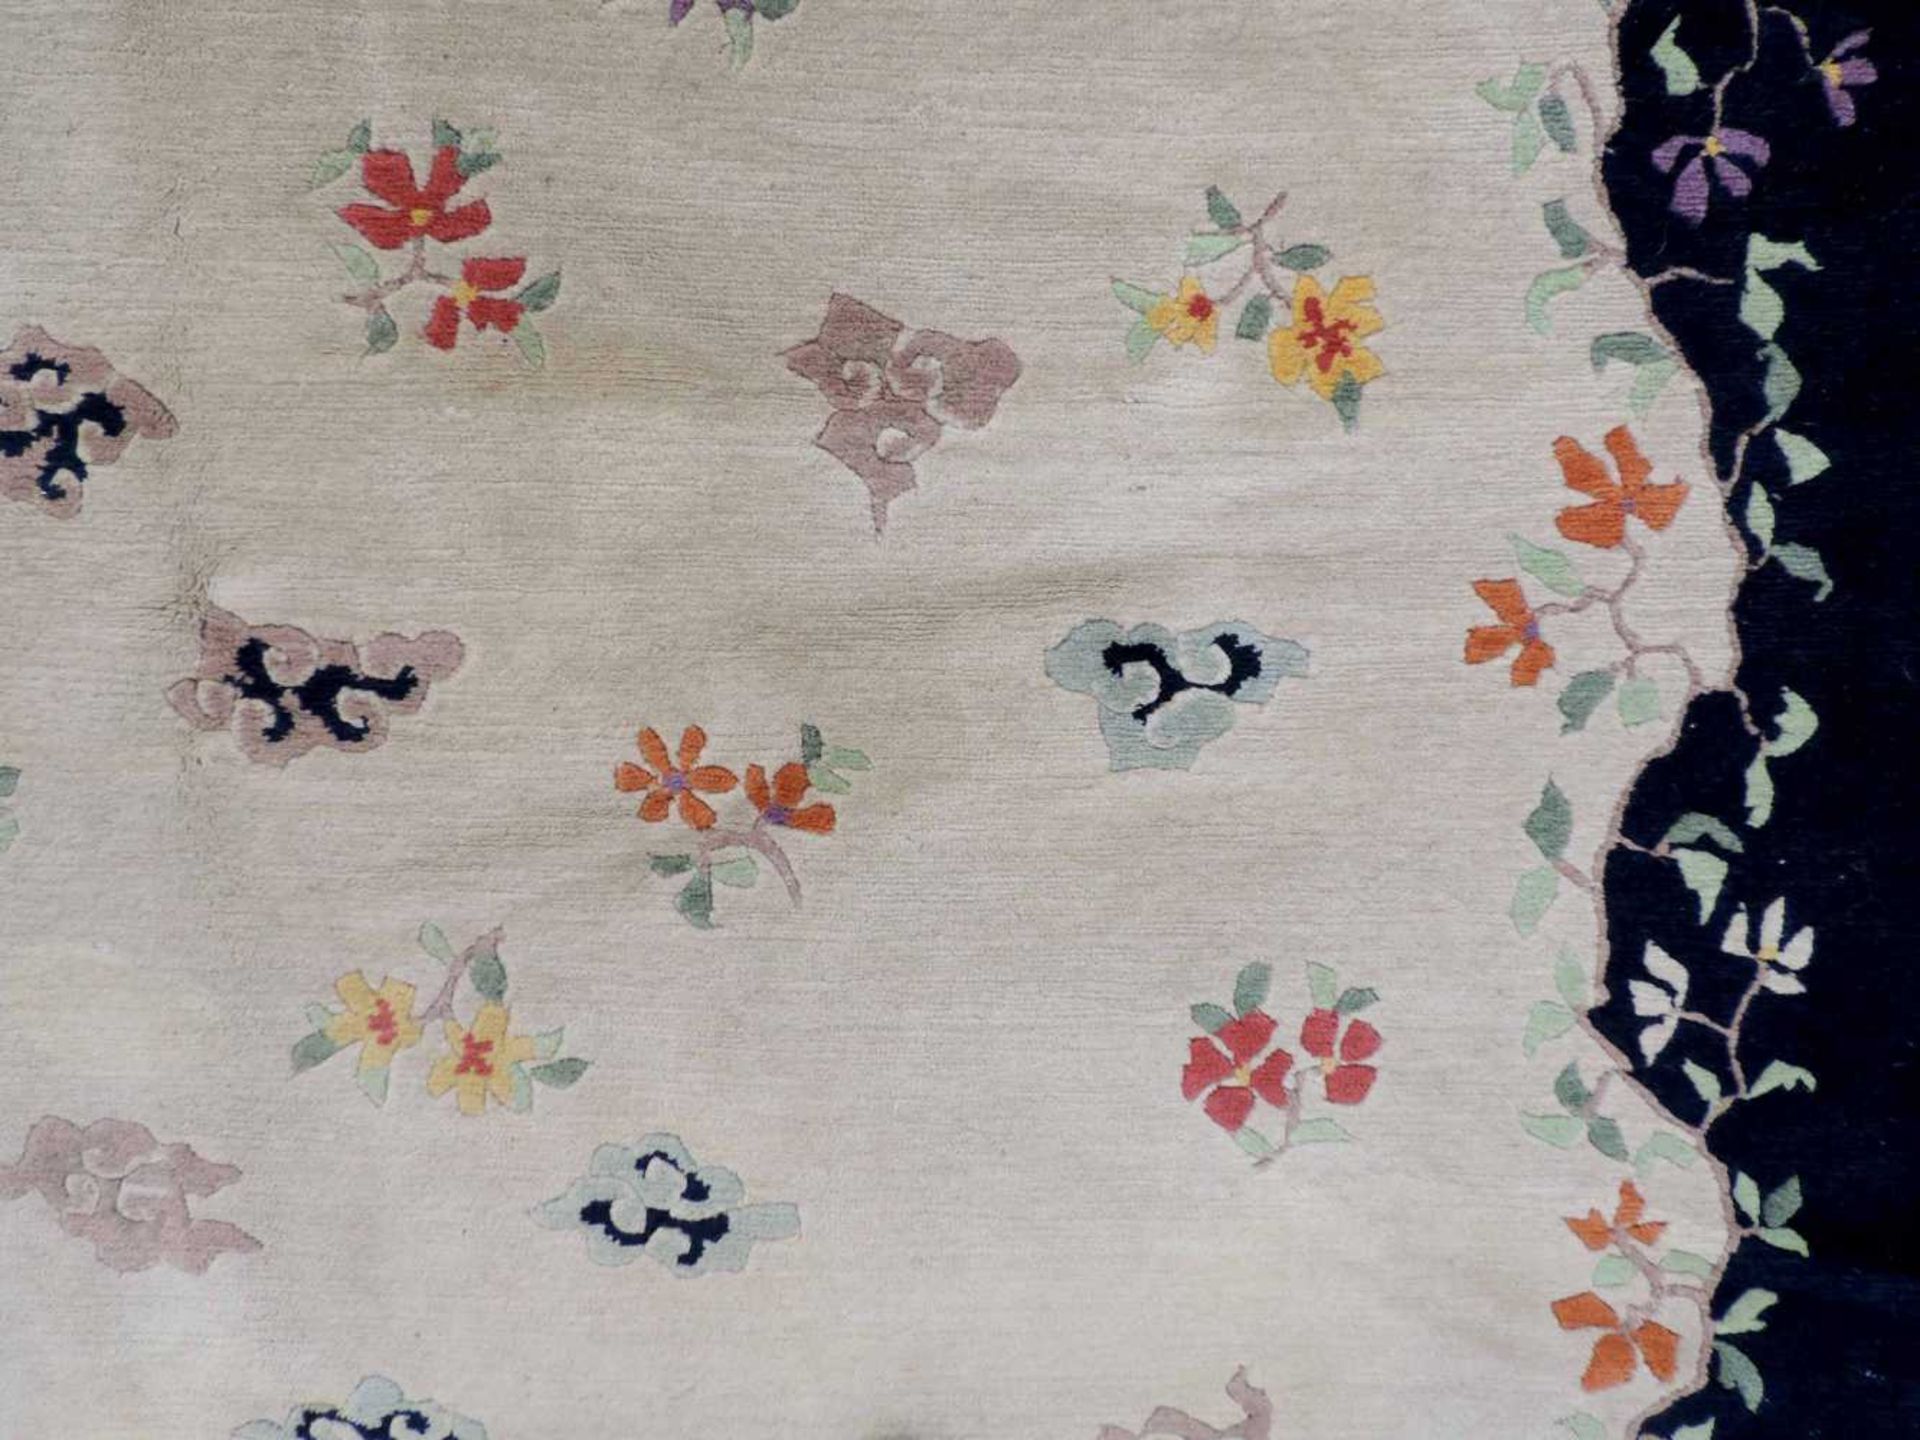 Blütenteppich China. 245 cm x 167 cm. Handgeknüpft, Wolle auf Baumwolle. Blossoms carpet China. - Bild 3 aus 12